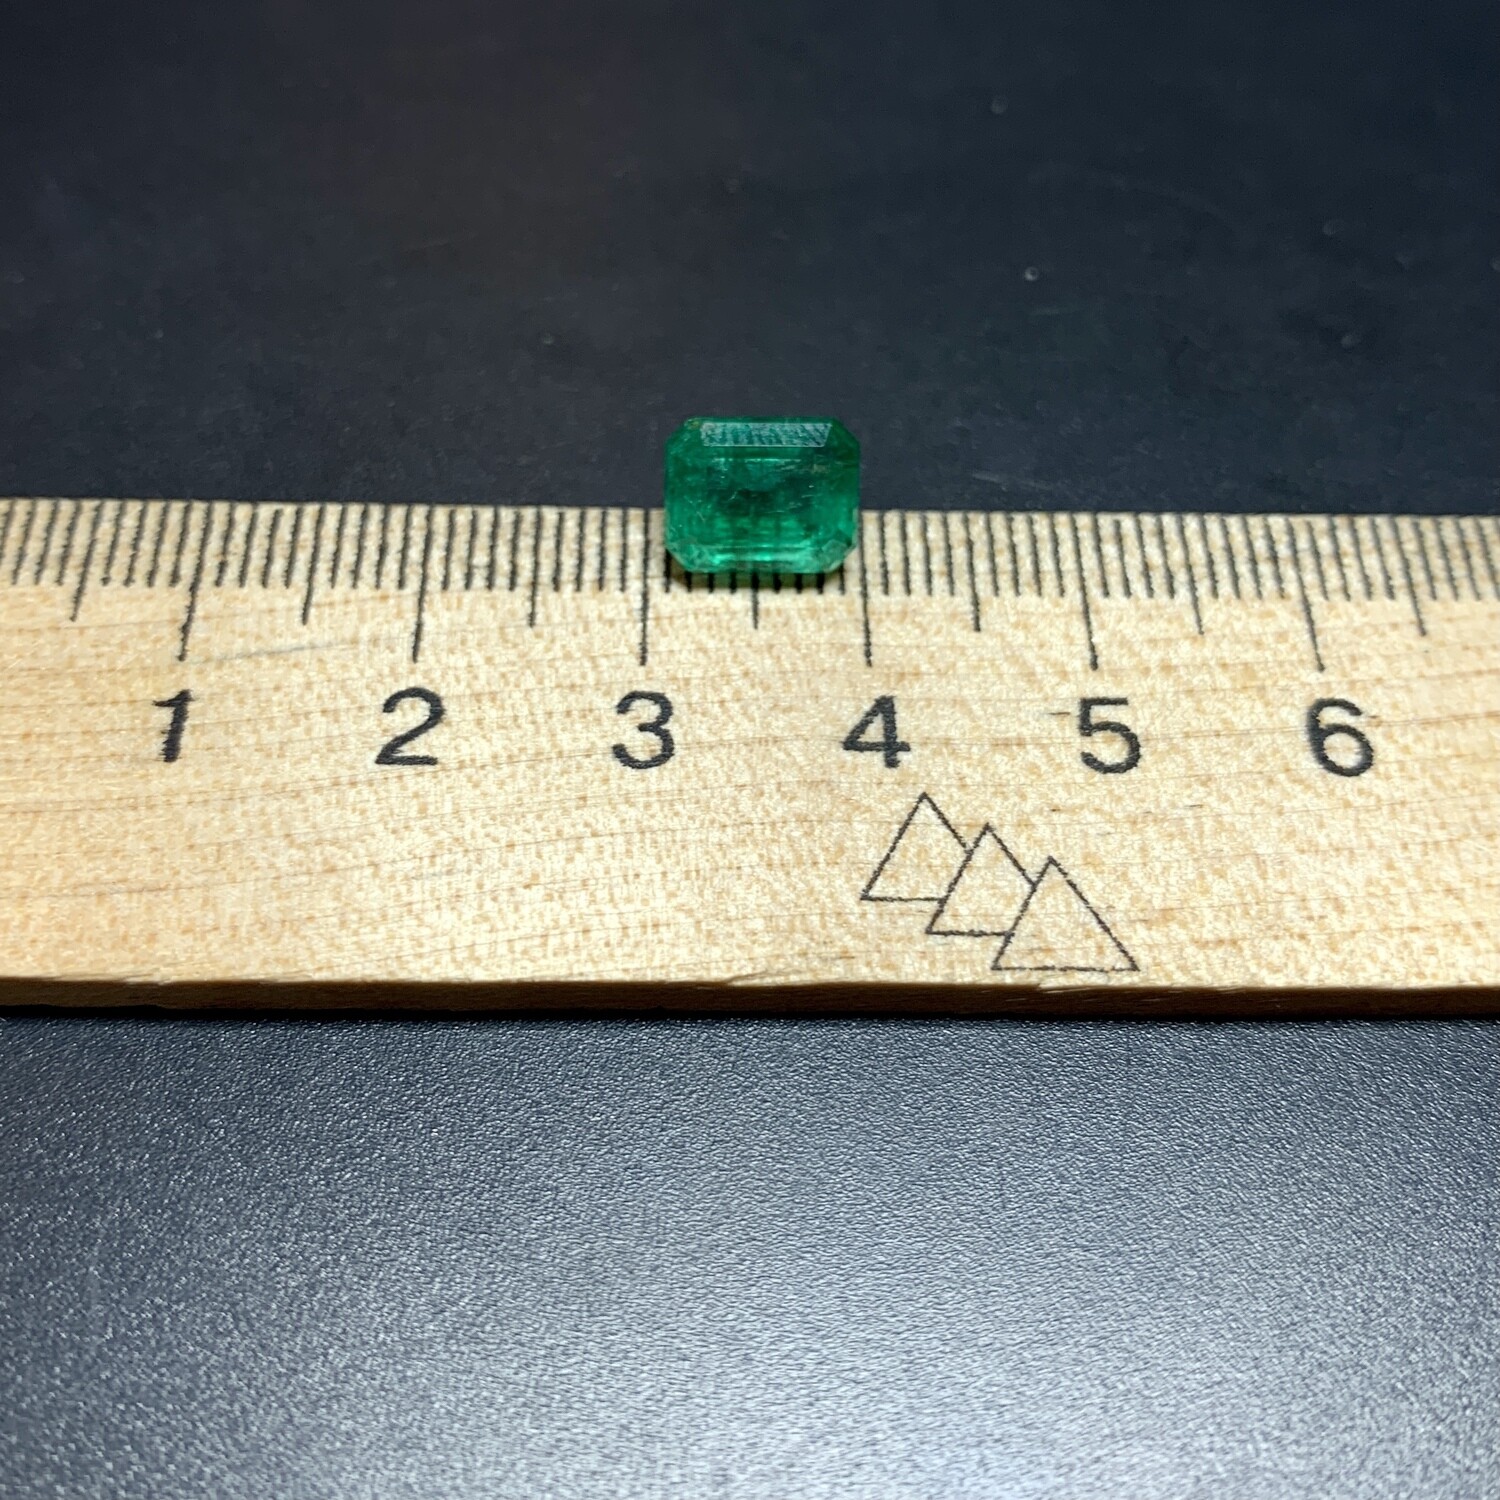 Emerald octagon cut 2.69 ct